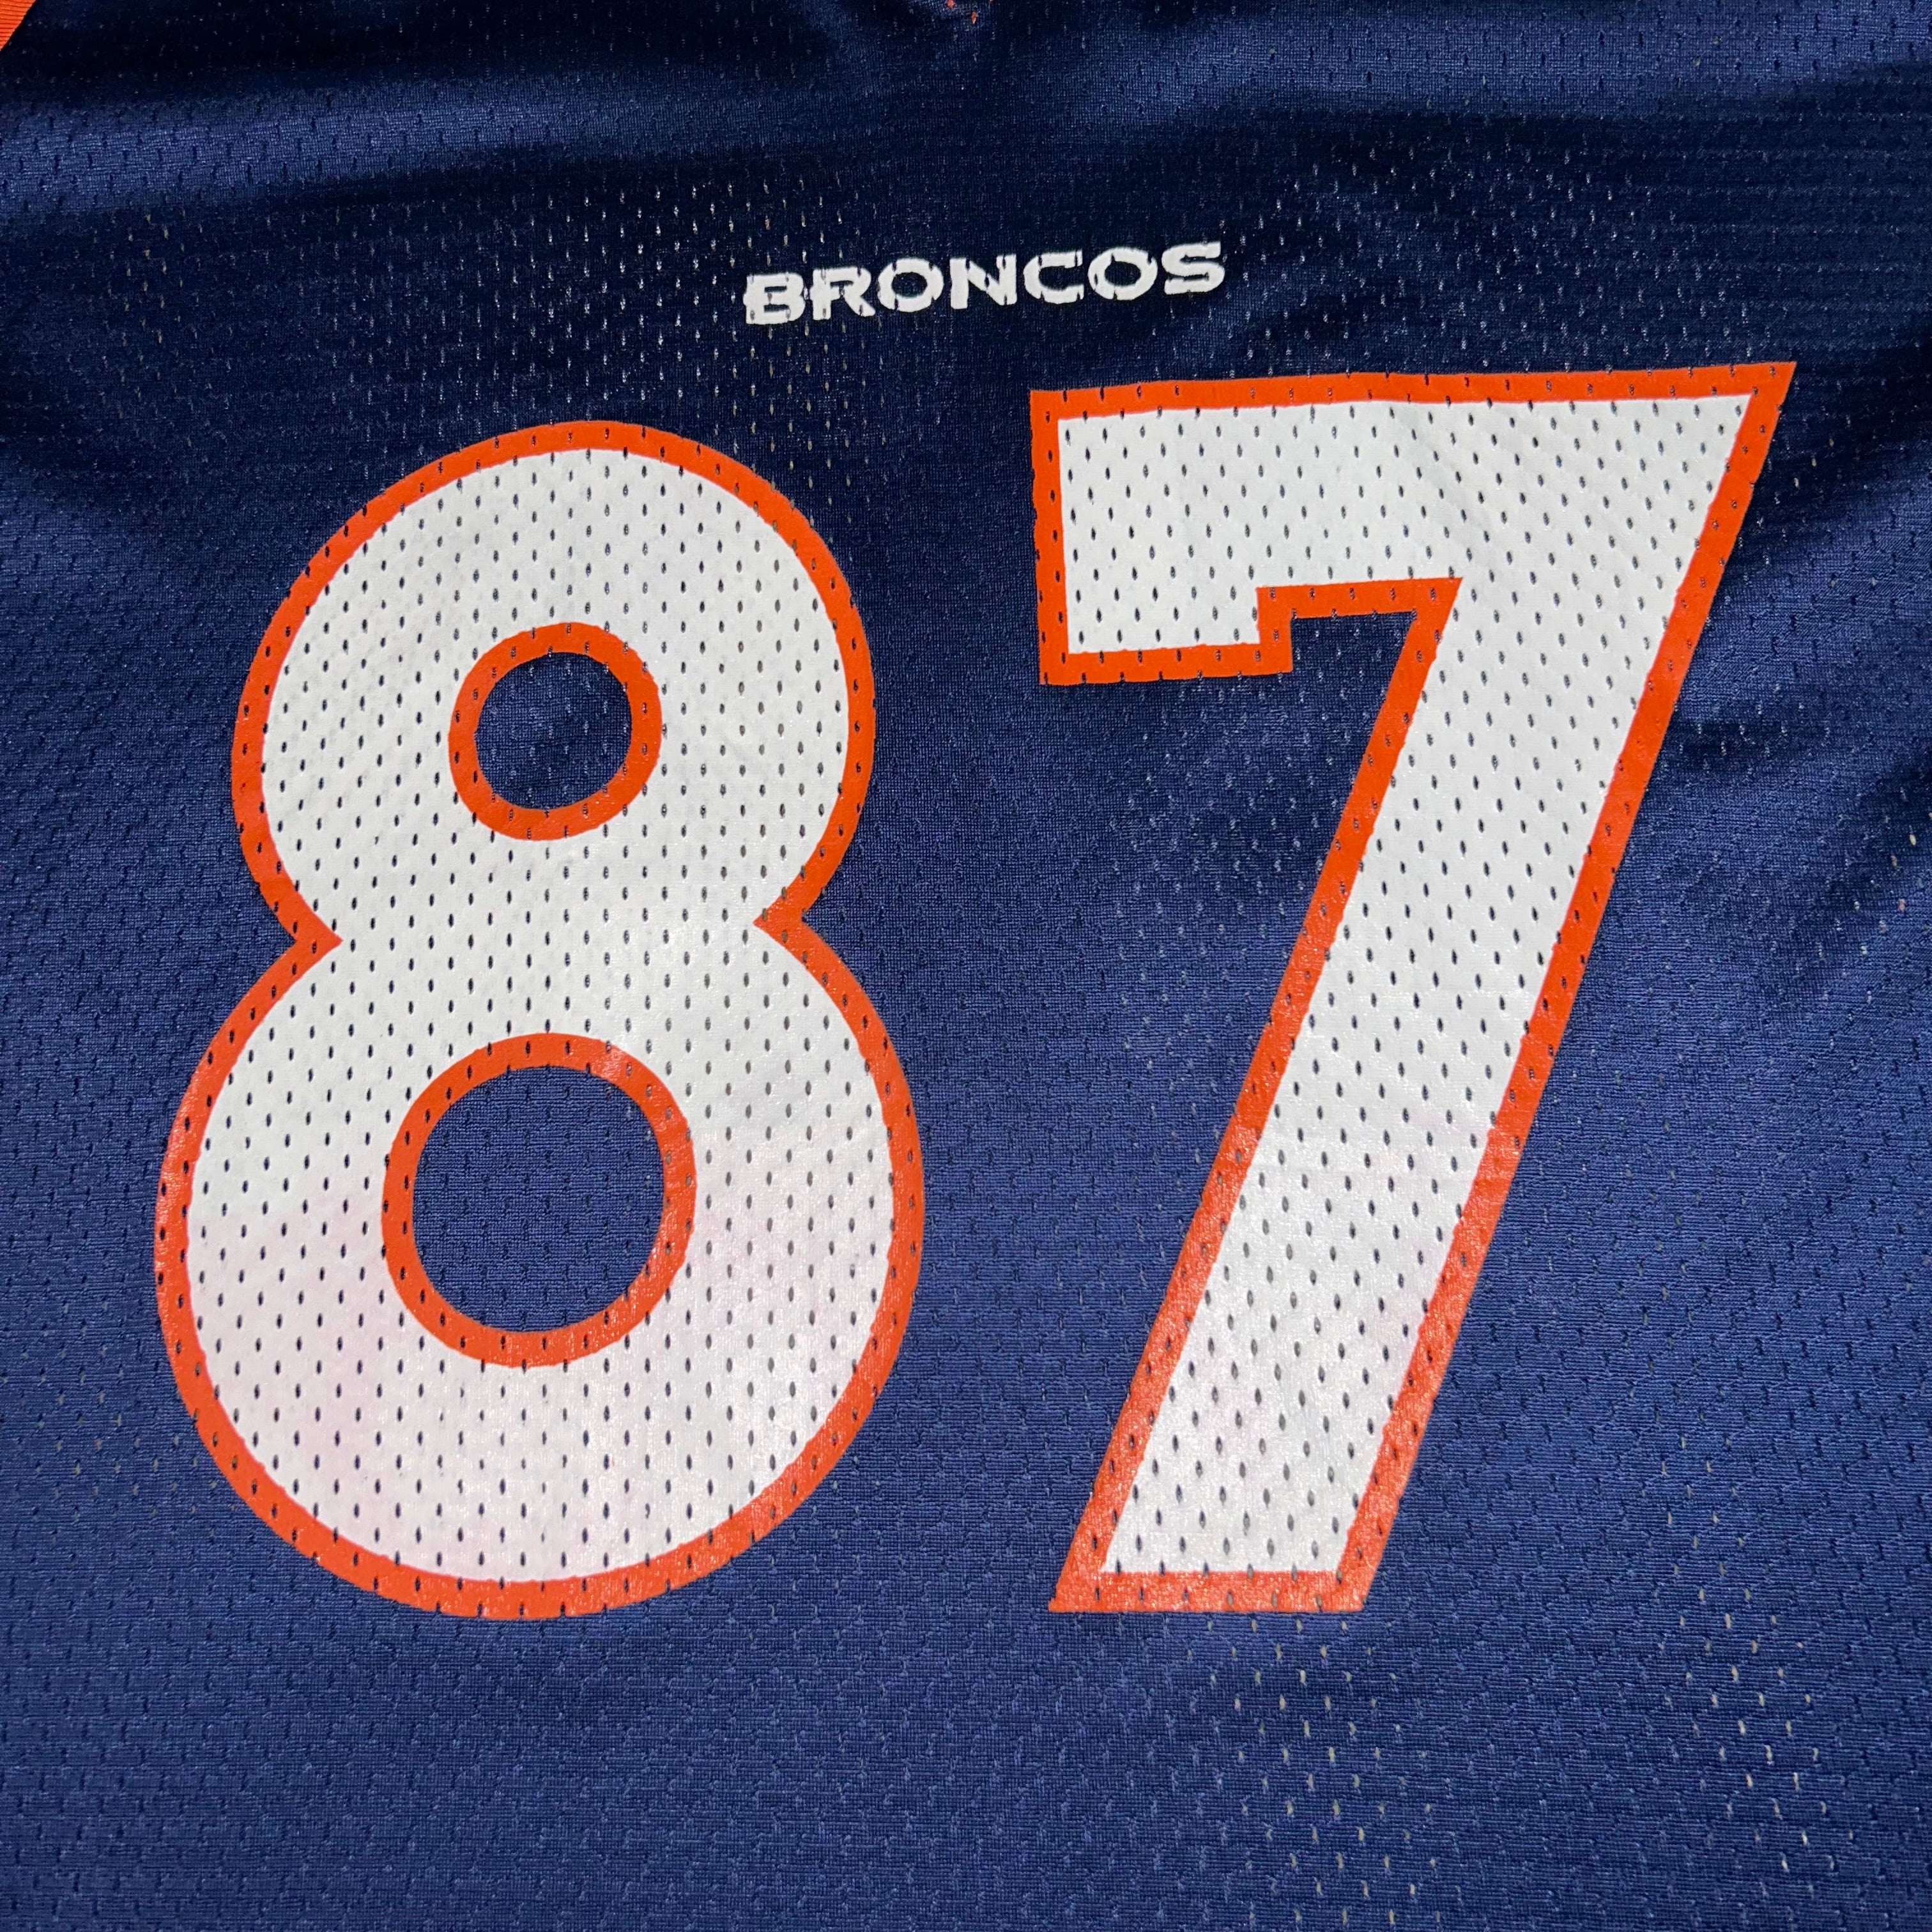 Jersey Denver Broncos NFL NIKE  (XL)